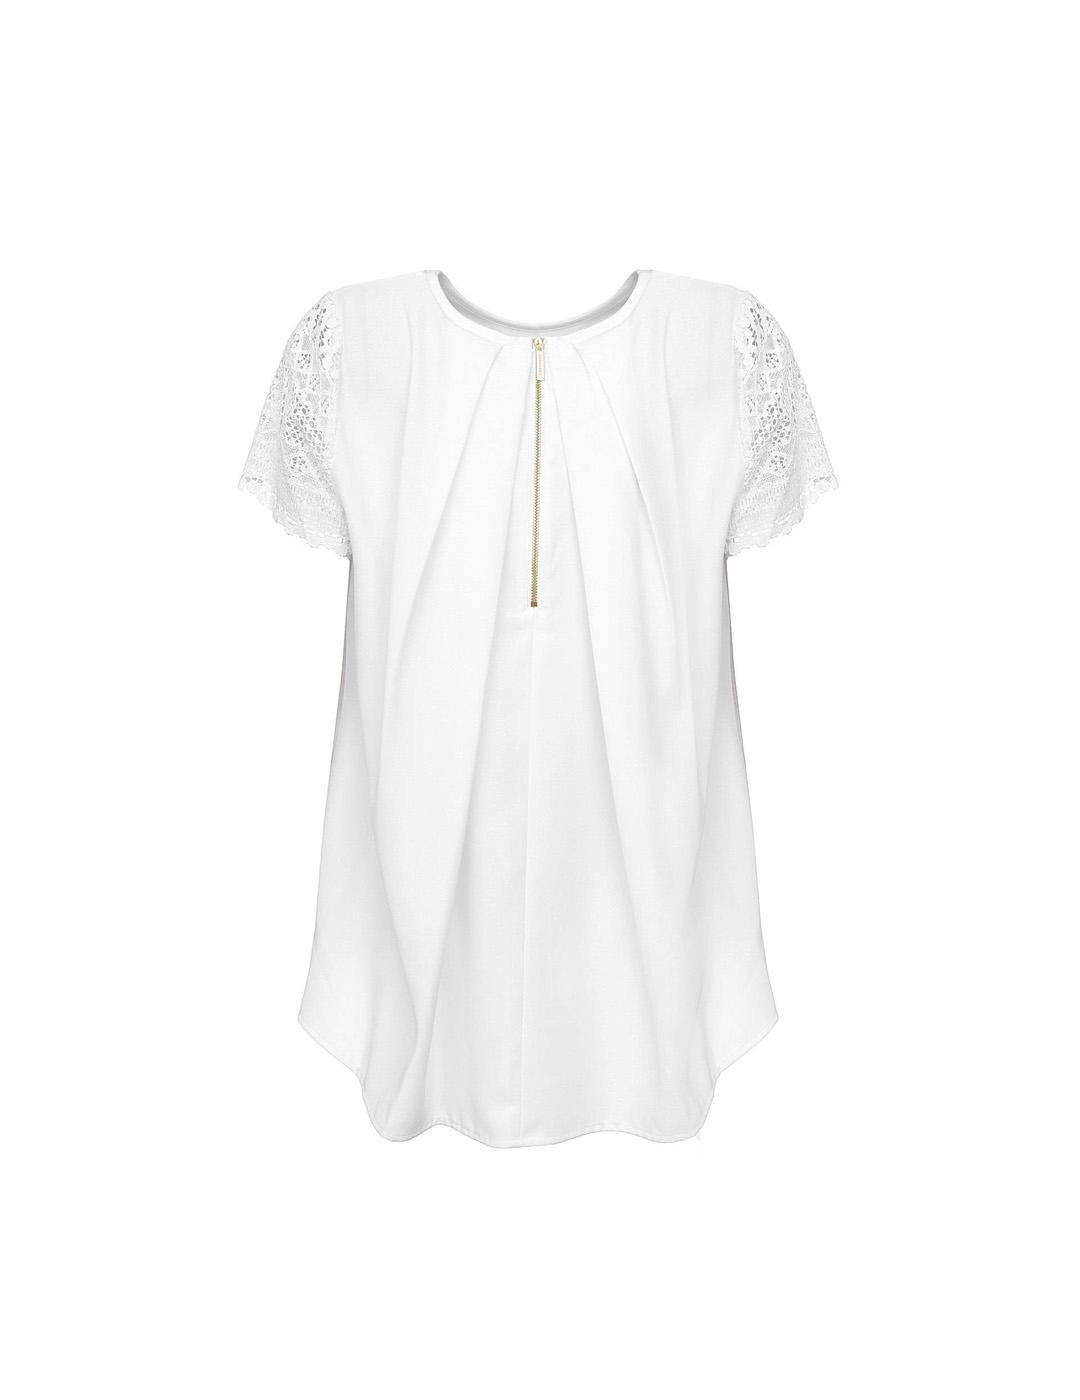 Camiseta Michael Kors blanca Puntilla